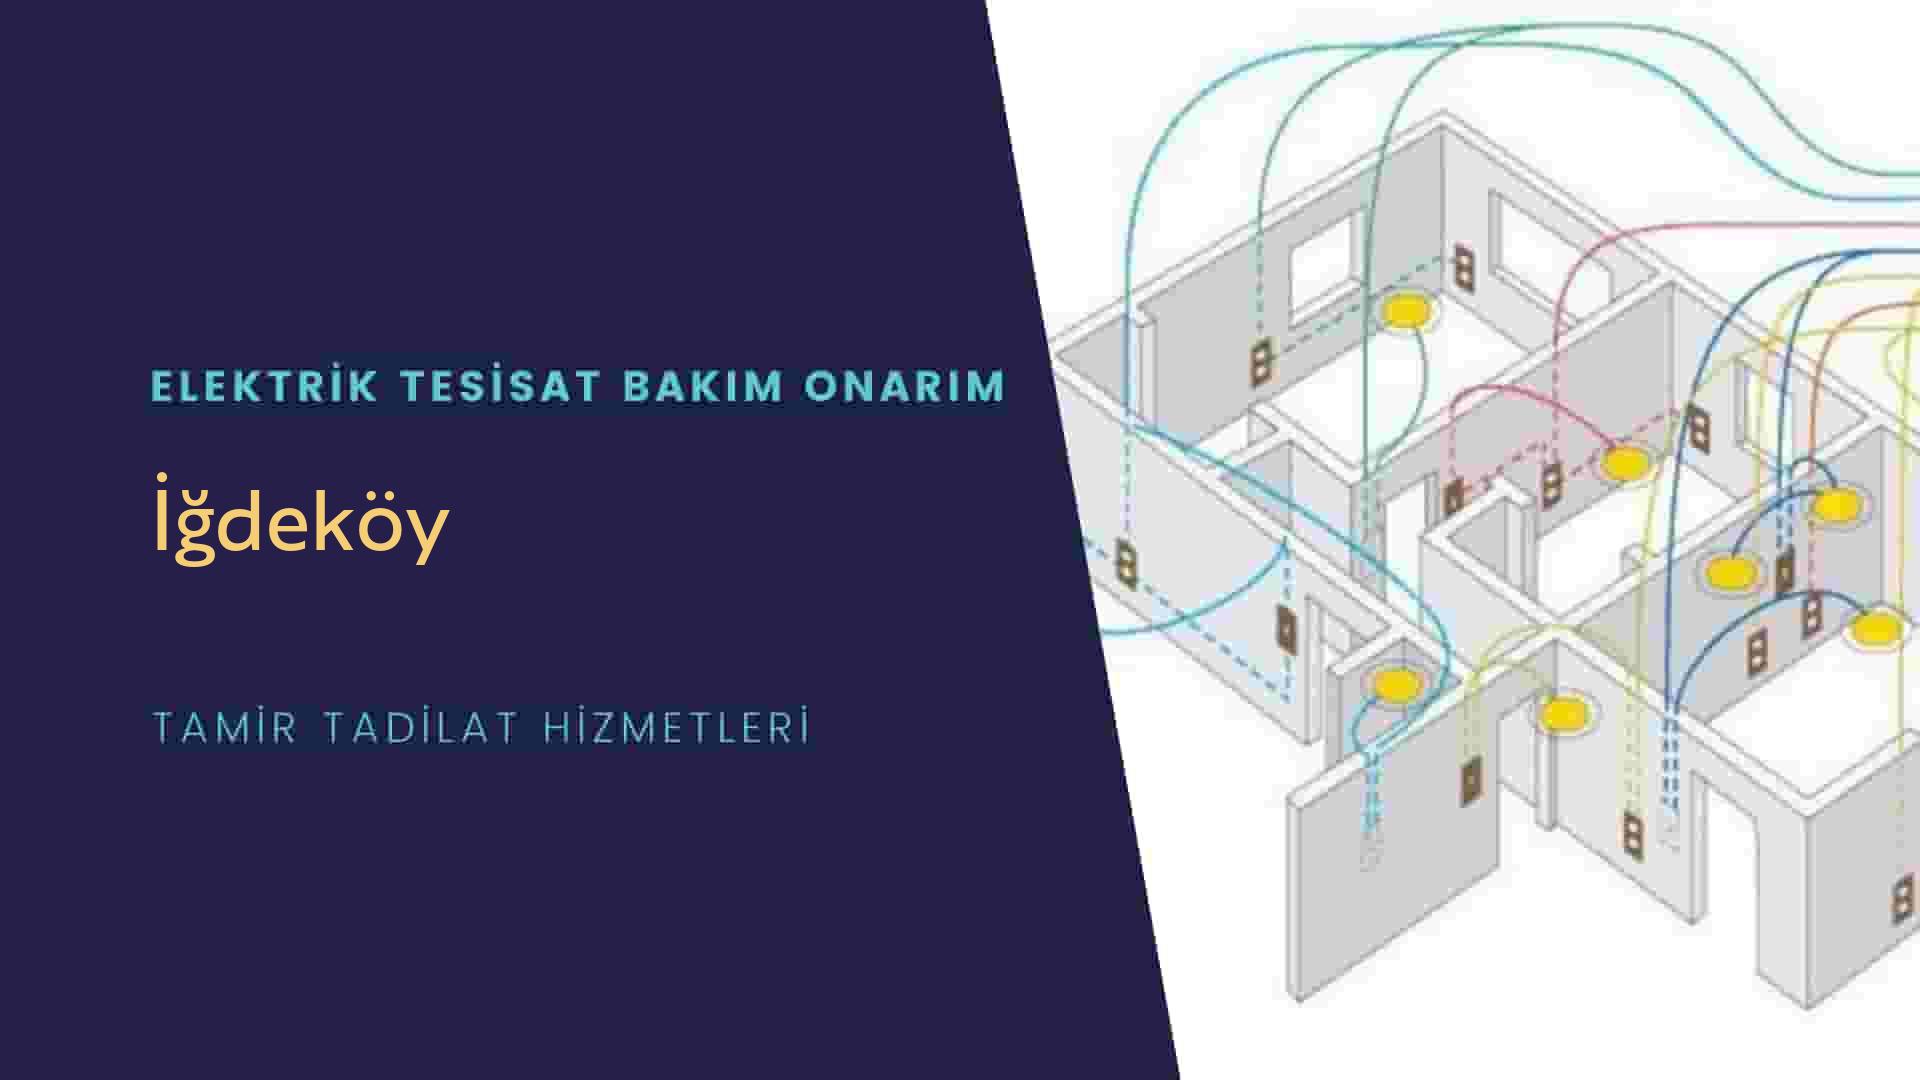 İğdeköy'de elektrik tesisatı ustalarımı arıyorsunuz doğru adrestenizi İğdeköy elektrik tesisatı ustalarımız 7/24 sizlere hizmet vermekten mutluluk duyar.